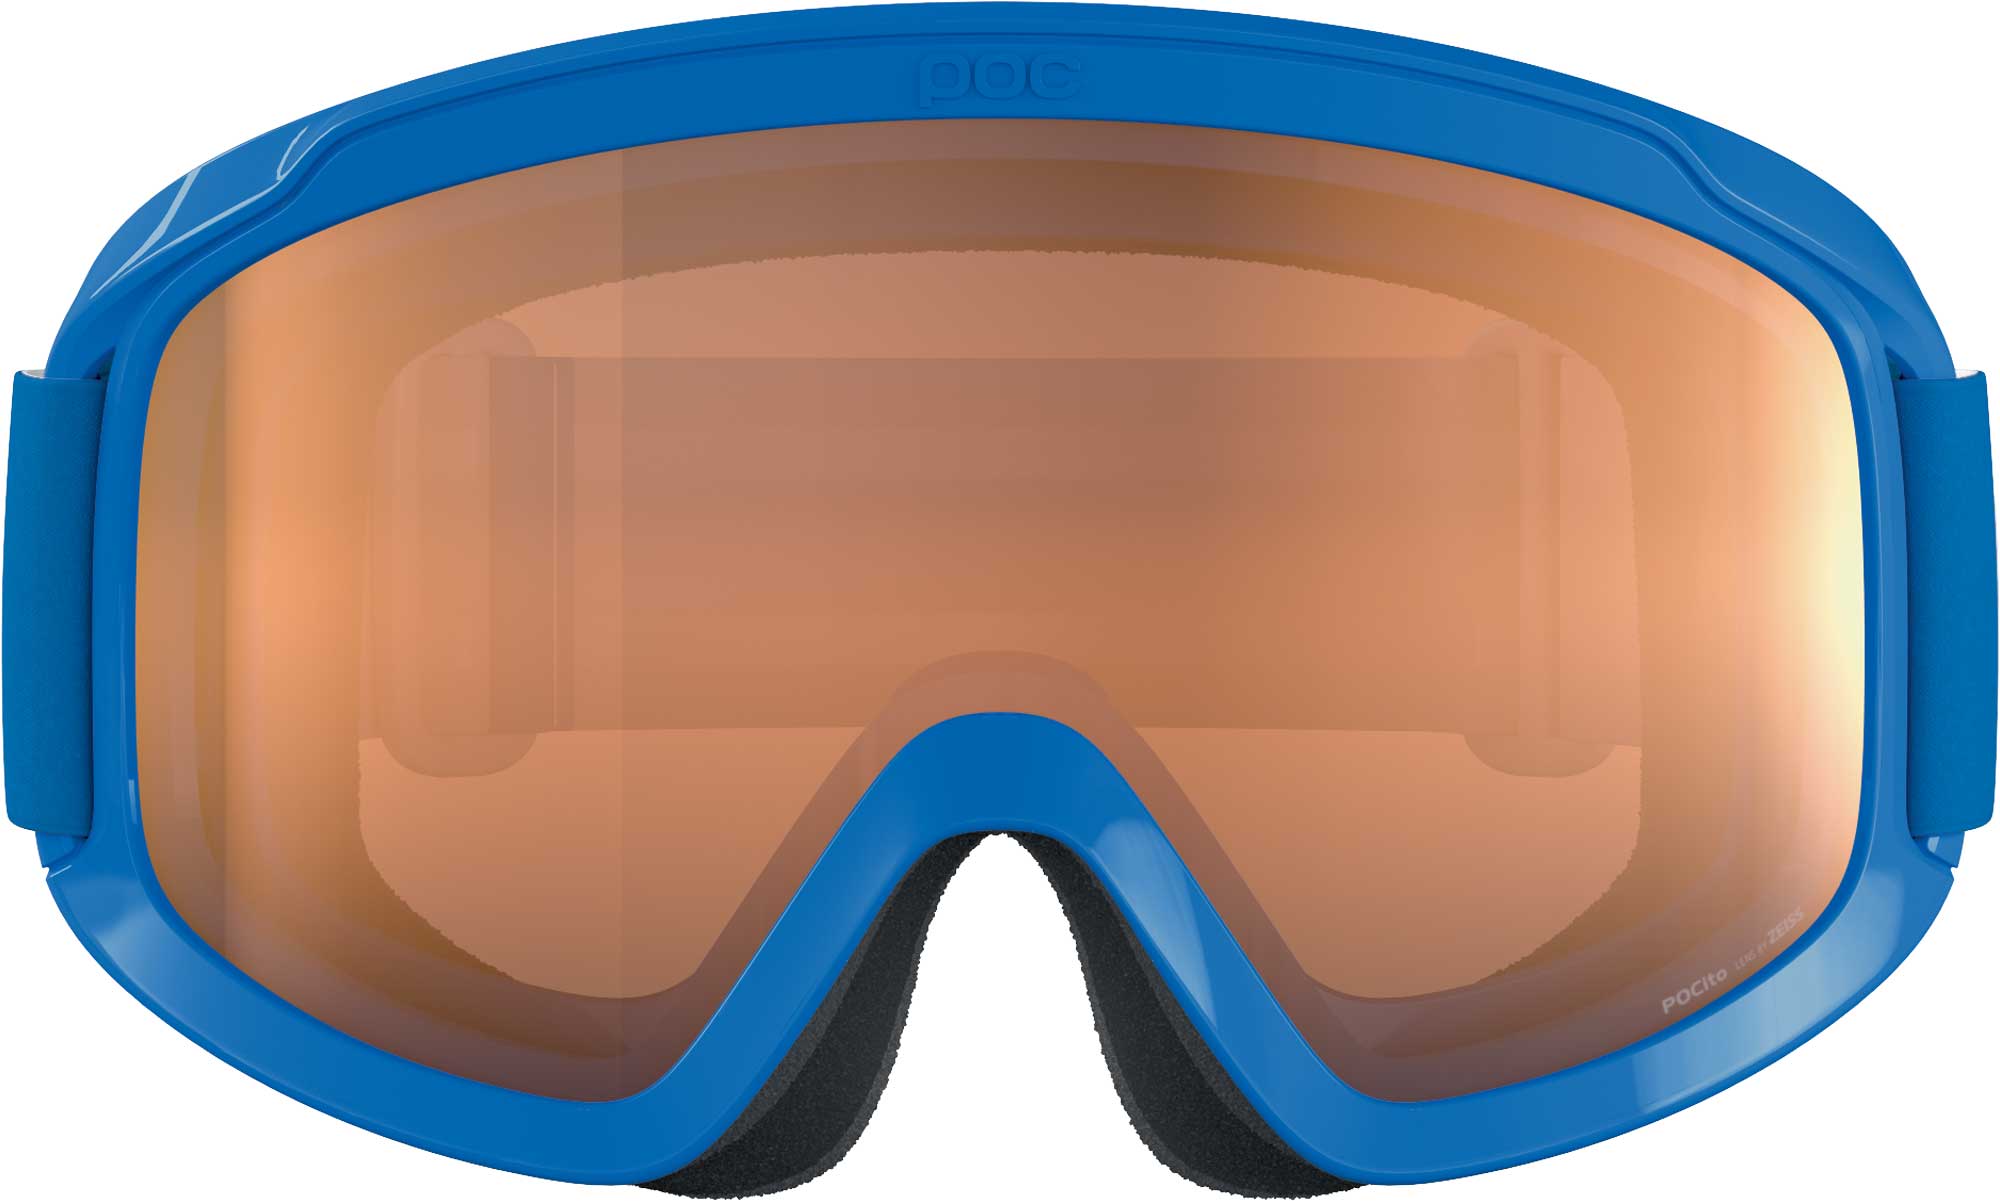 Dětské lyžařské brýle